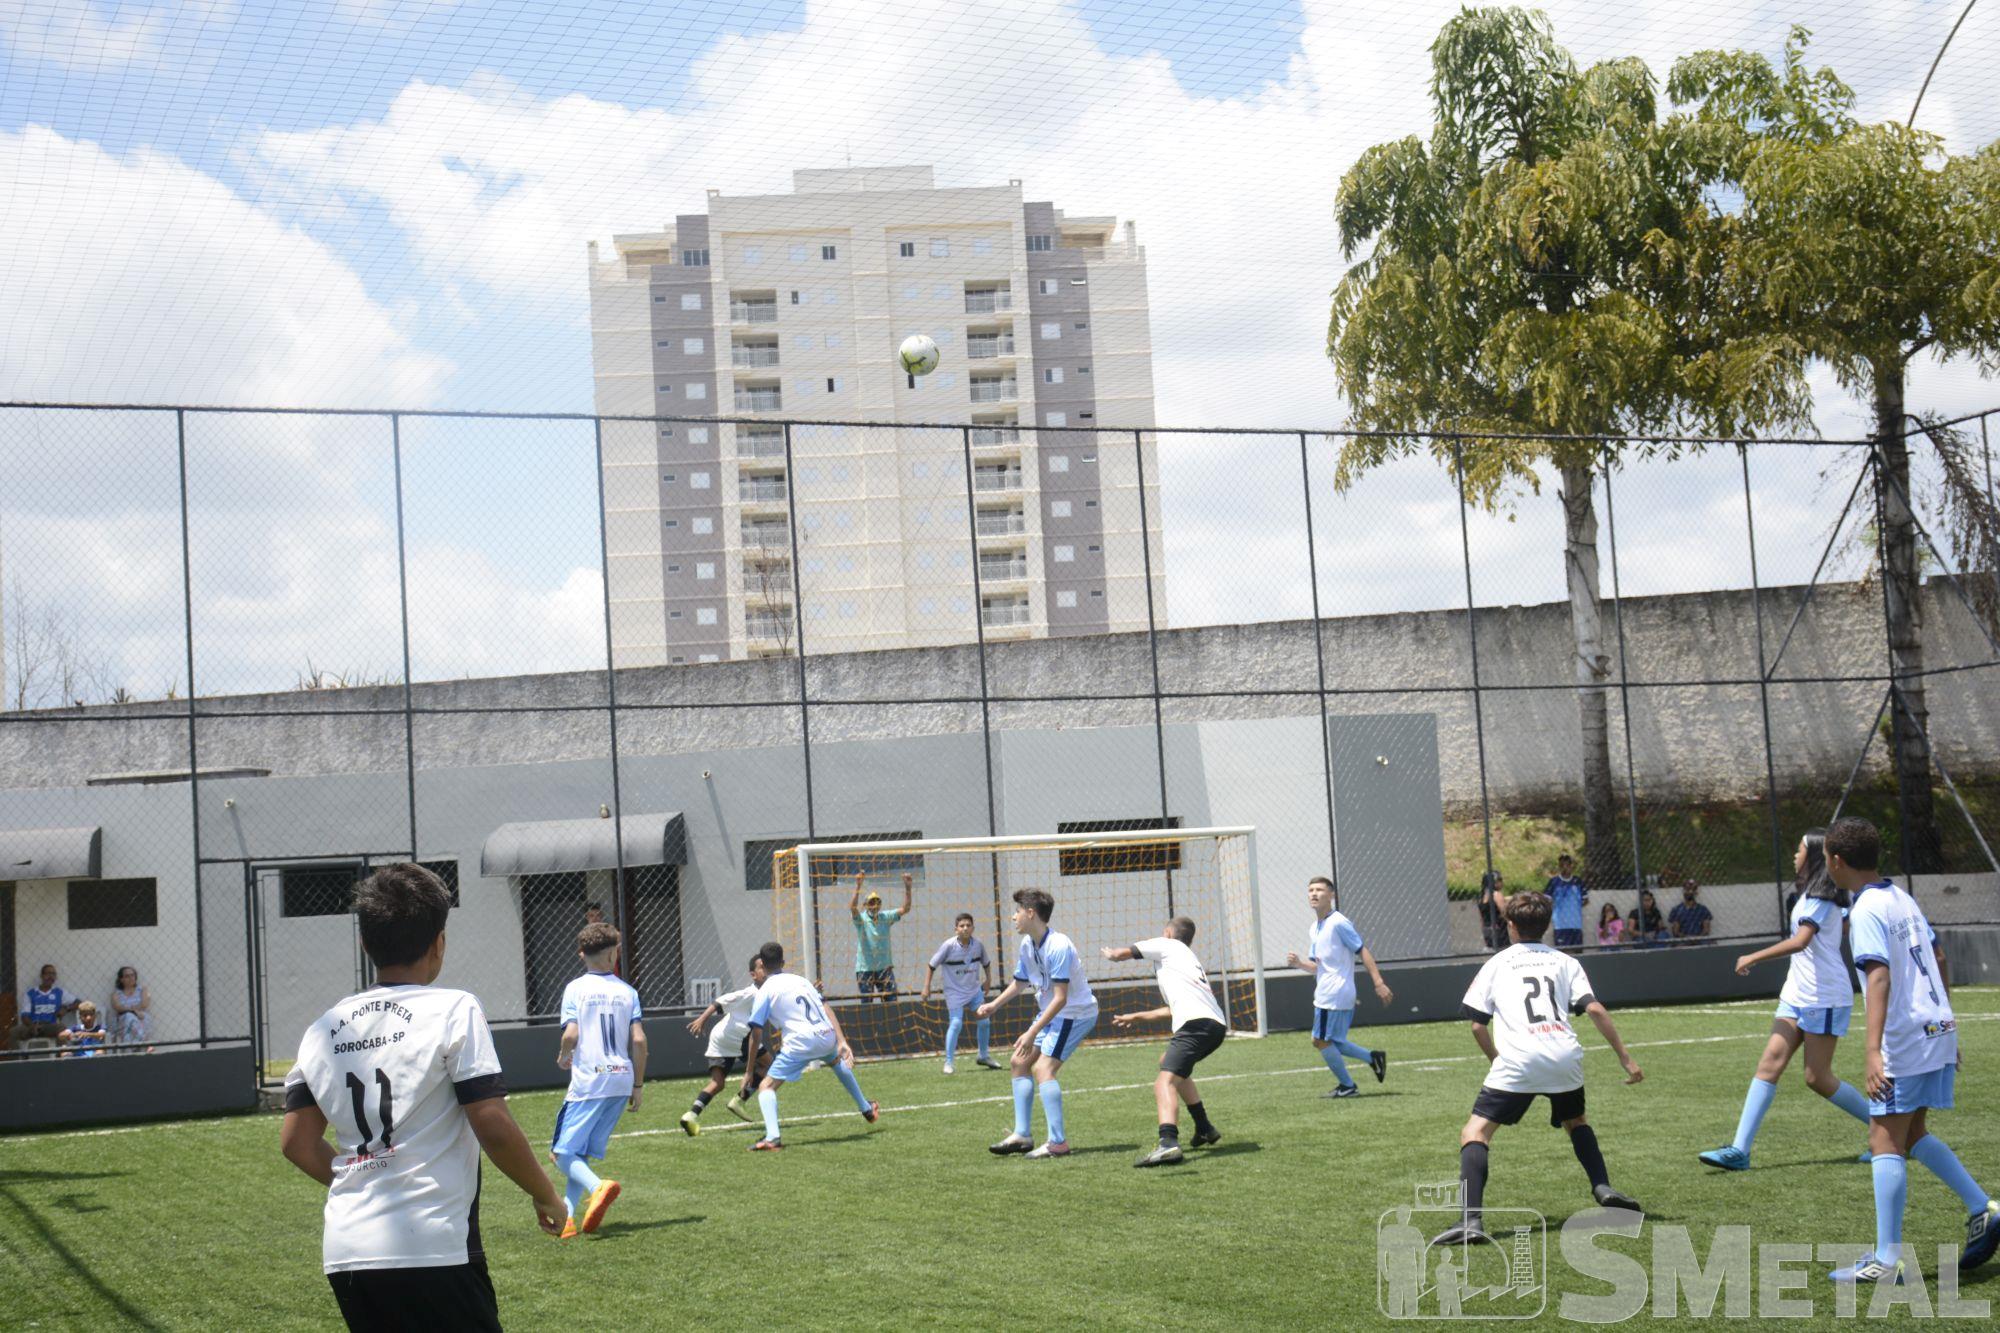 Foguinho/Imprensa SMetal , Alunos da Escolinha São Bento/SMetal jogam 2ª rodada; veja as fotos